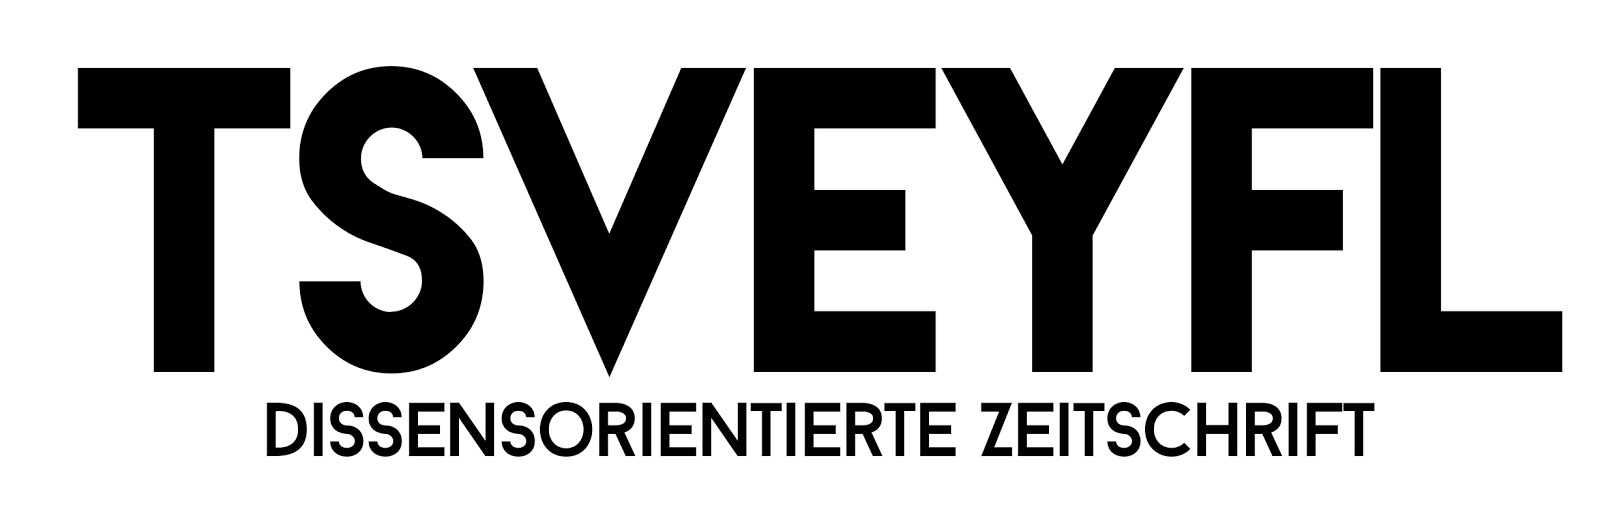 [Logo: Tsveyfl]